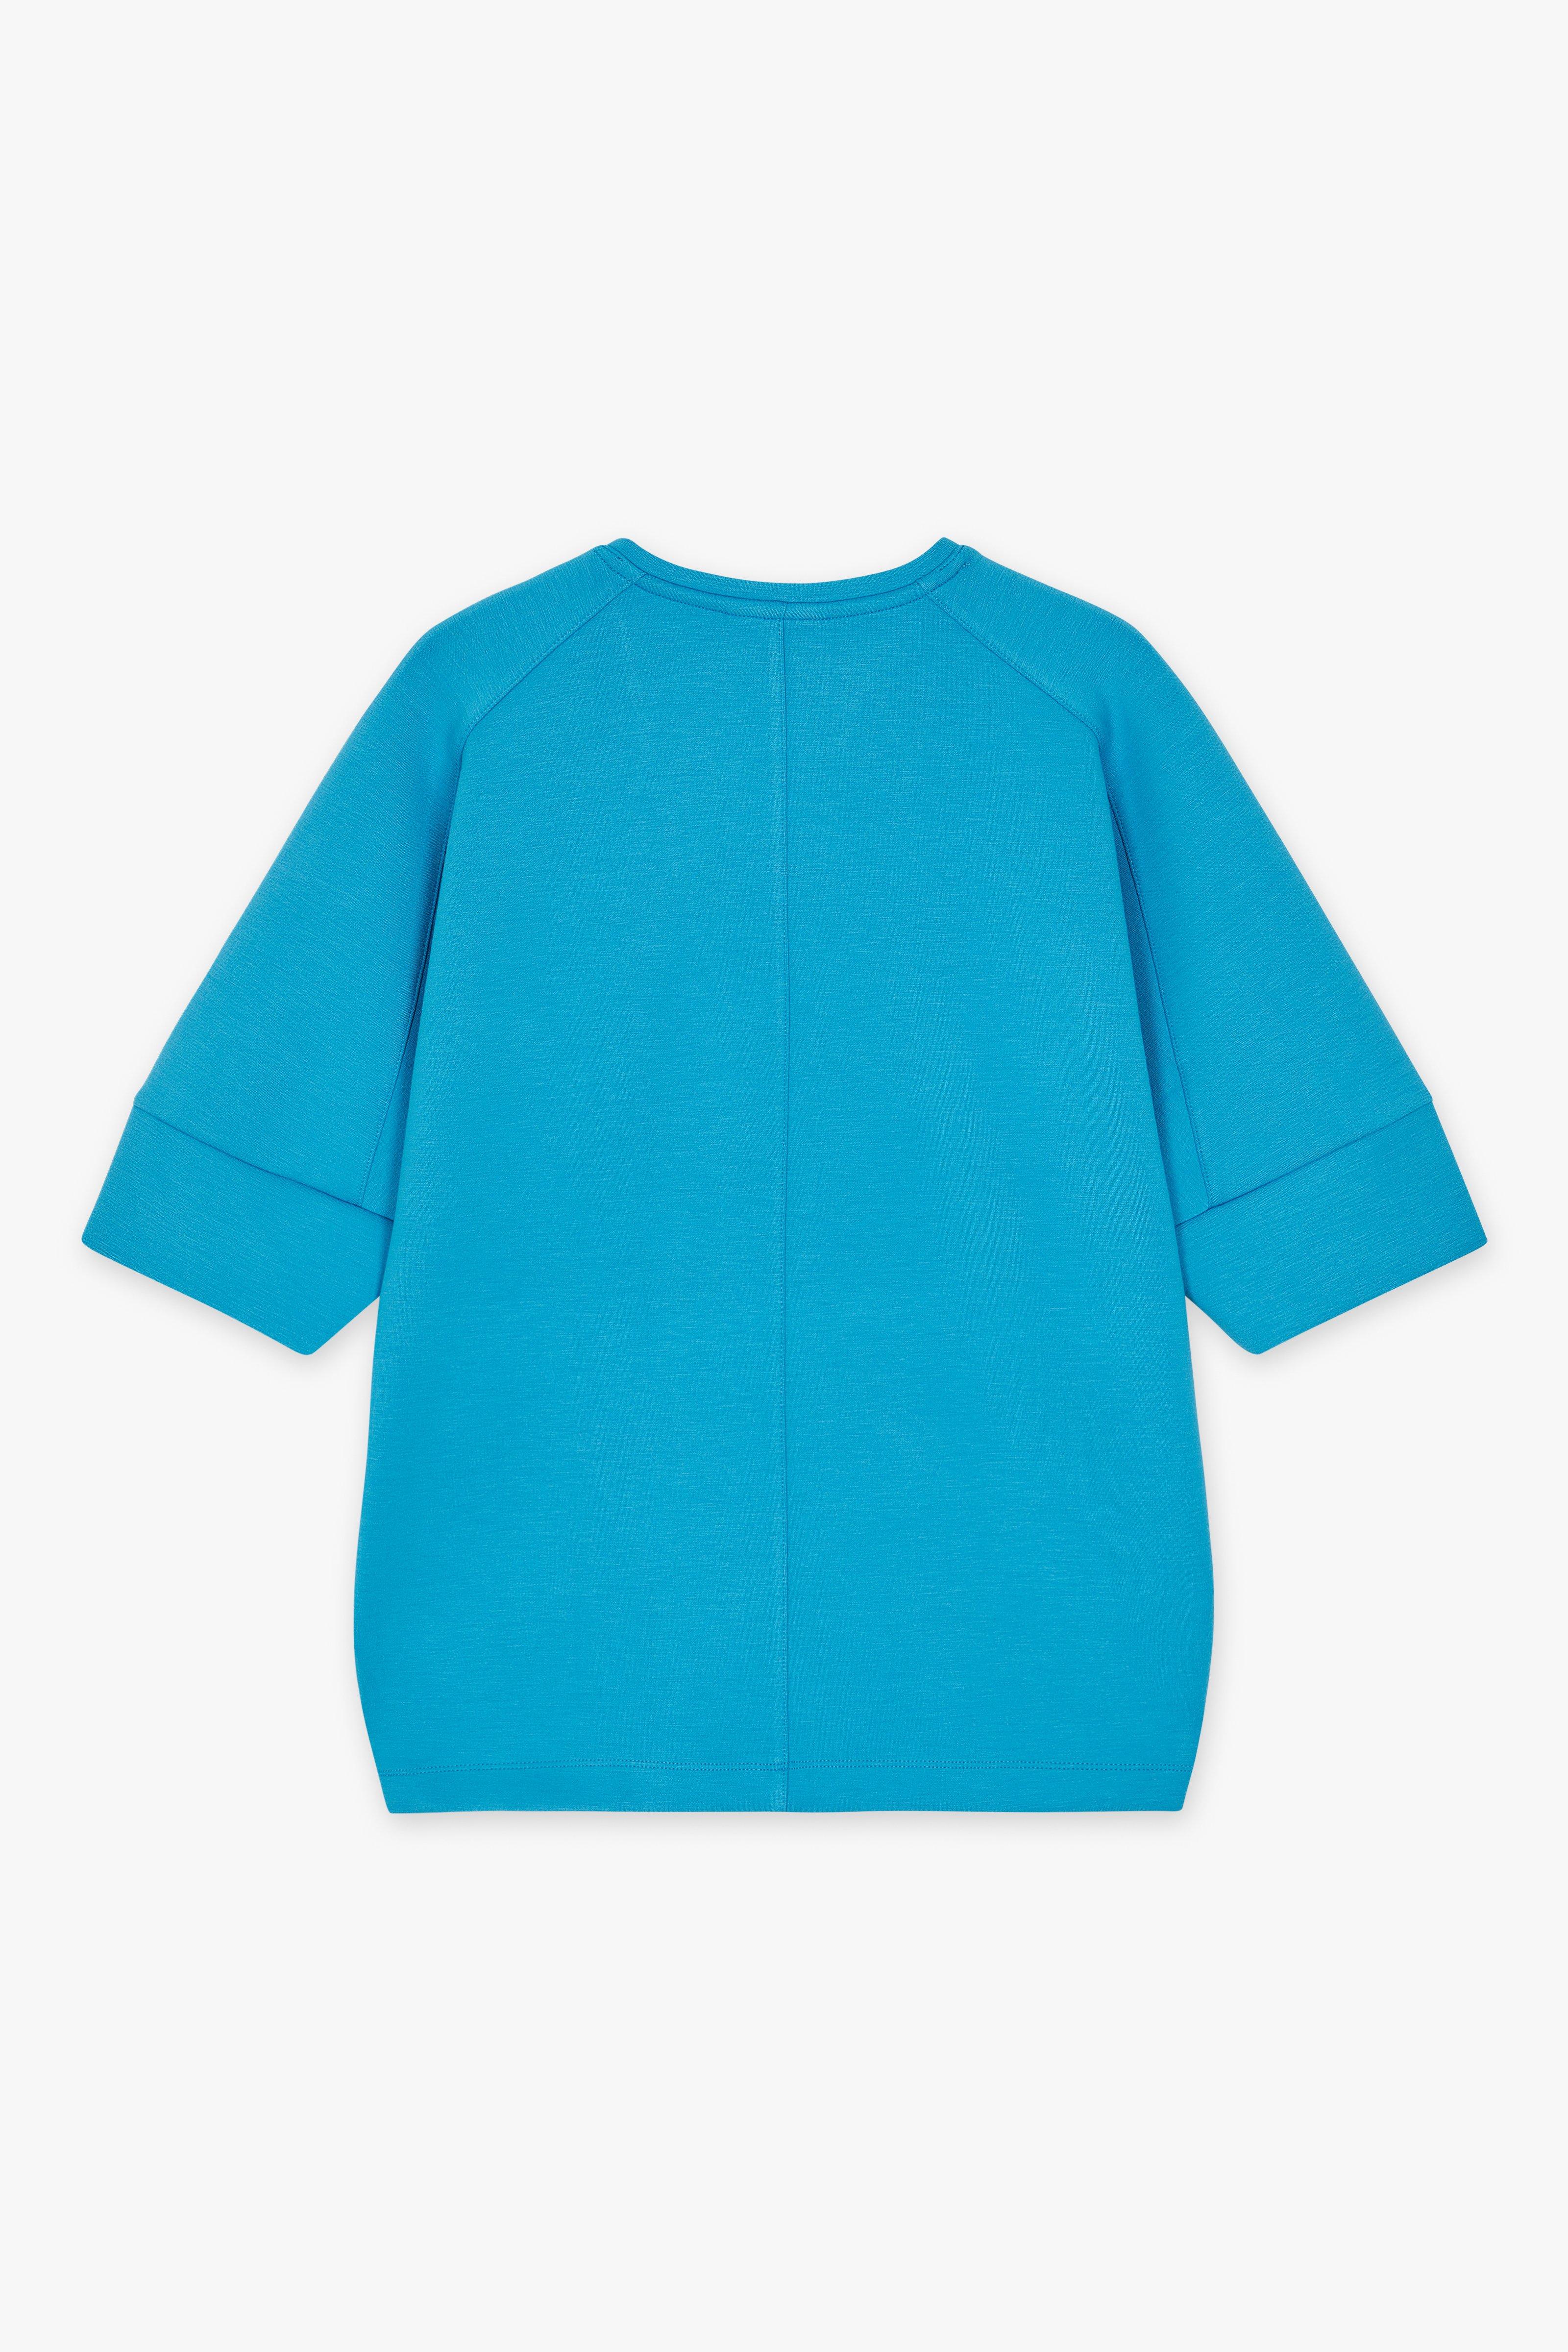 CKS Dames - ELDODEEP - sweater - vivid blue